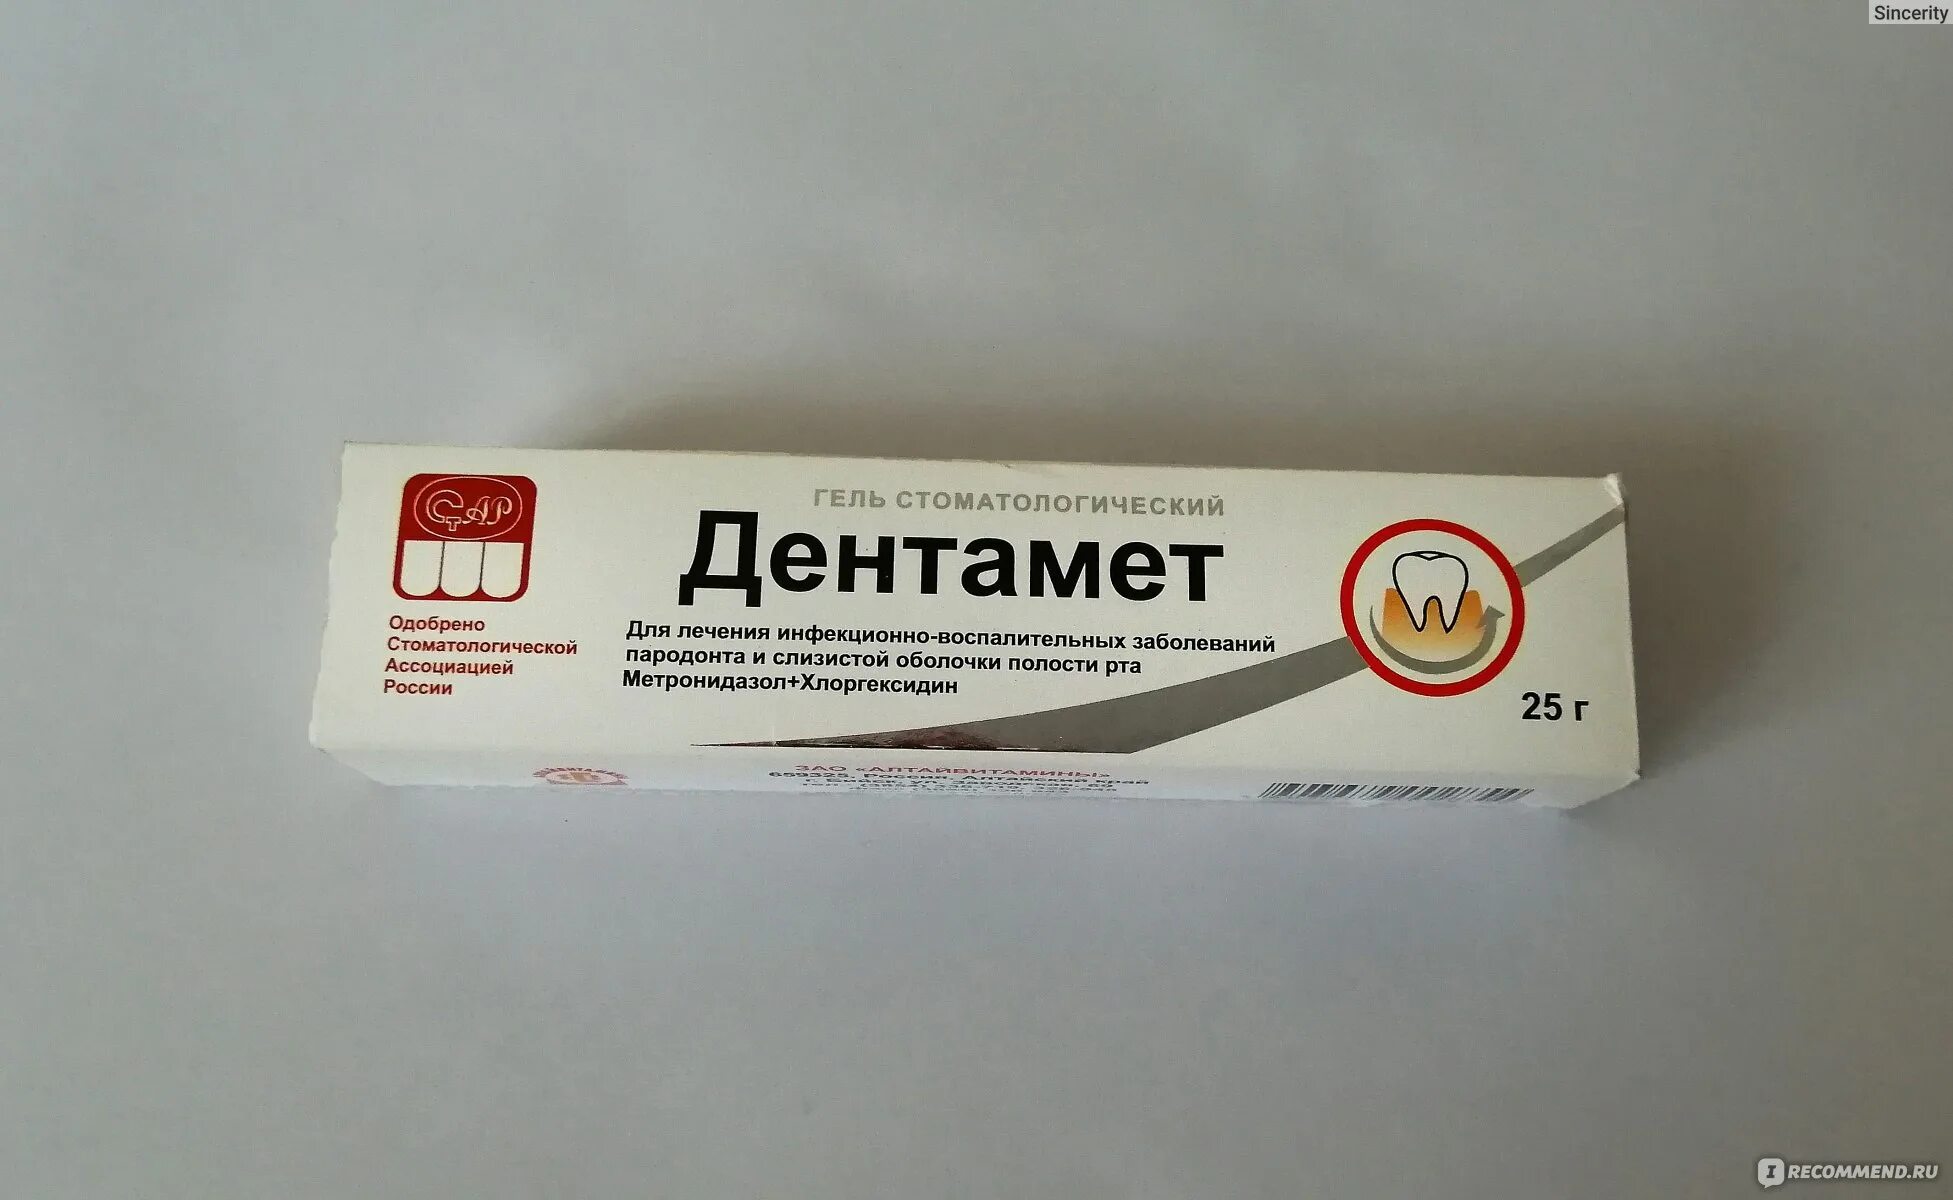 Дентамет гель алтайвитамины. Дентамет гель стоматологический. Дентамет гель от стоматита. Дентамет гель, 25 г. алтайвитамины.